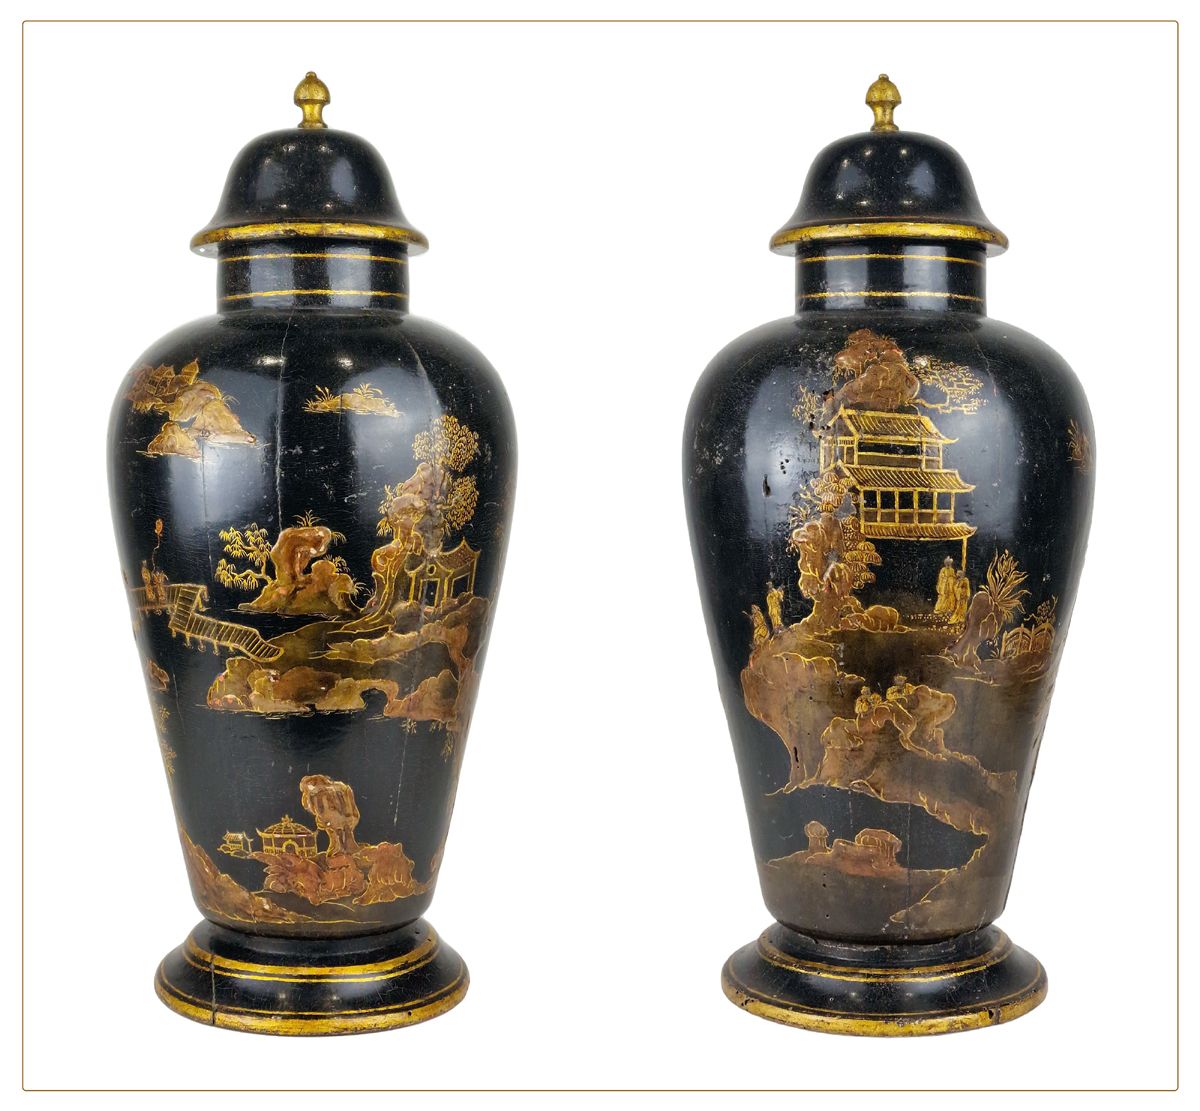 VENISE, ITALIE 18ème SIECLE Rare paire de vases couverts aux chinoiseries
De for&hellip;